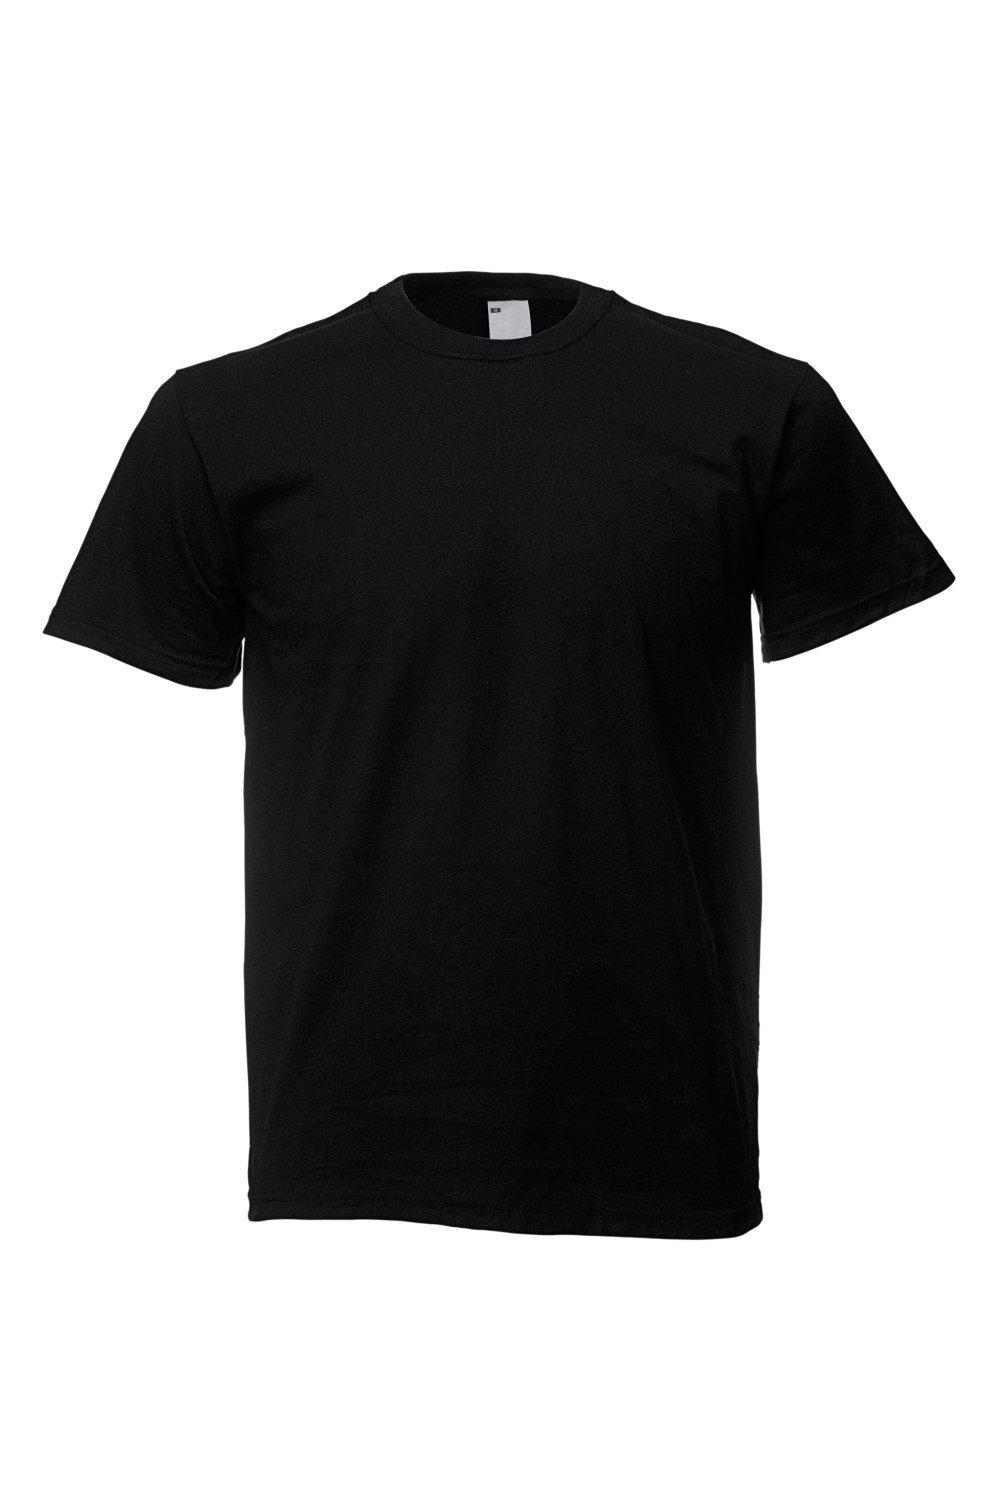 Повседневная футболка с коротким рукавом Universal Textiles, черный мужская футболка ретро кассета 2xl серый меланж